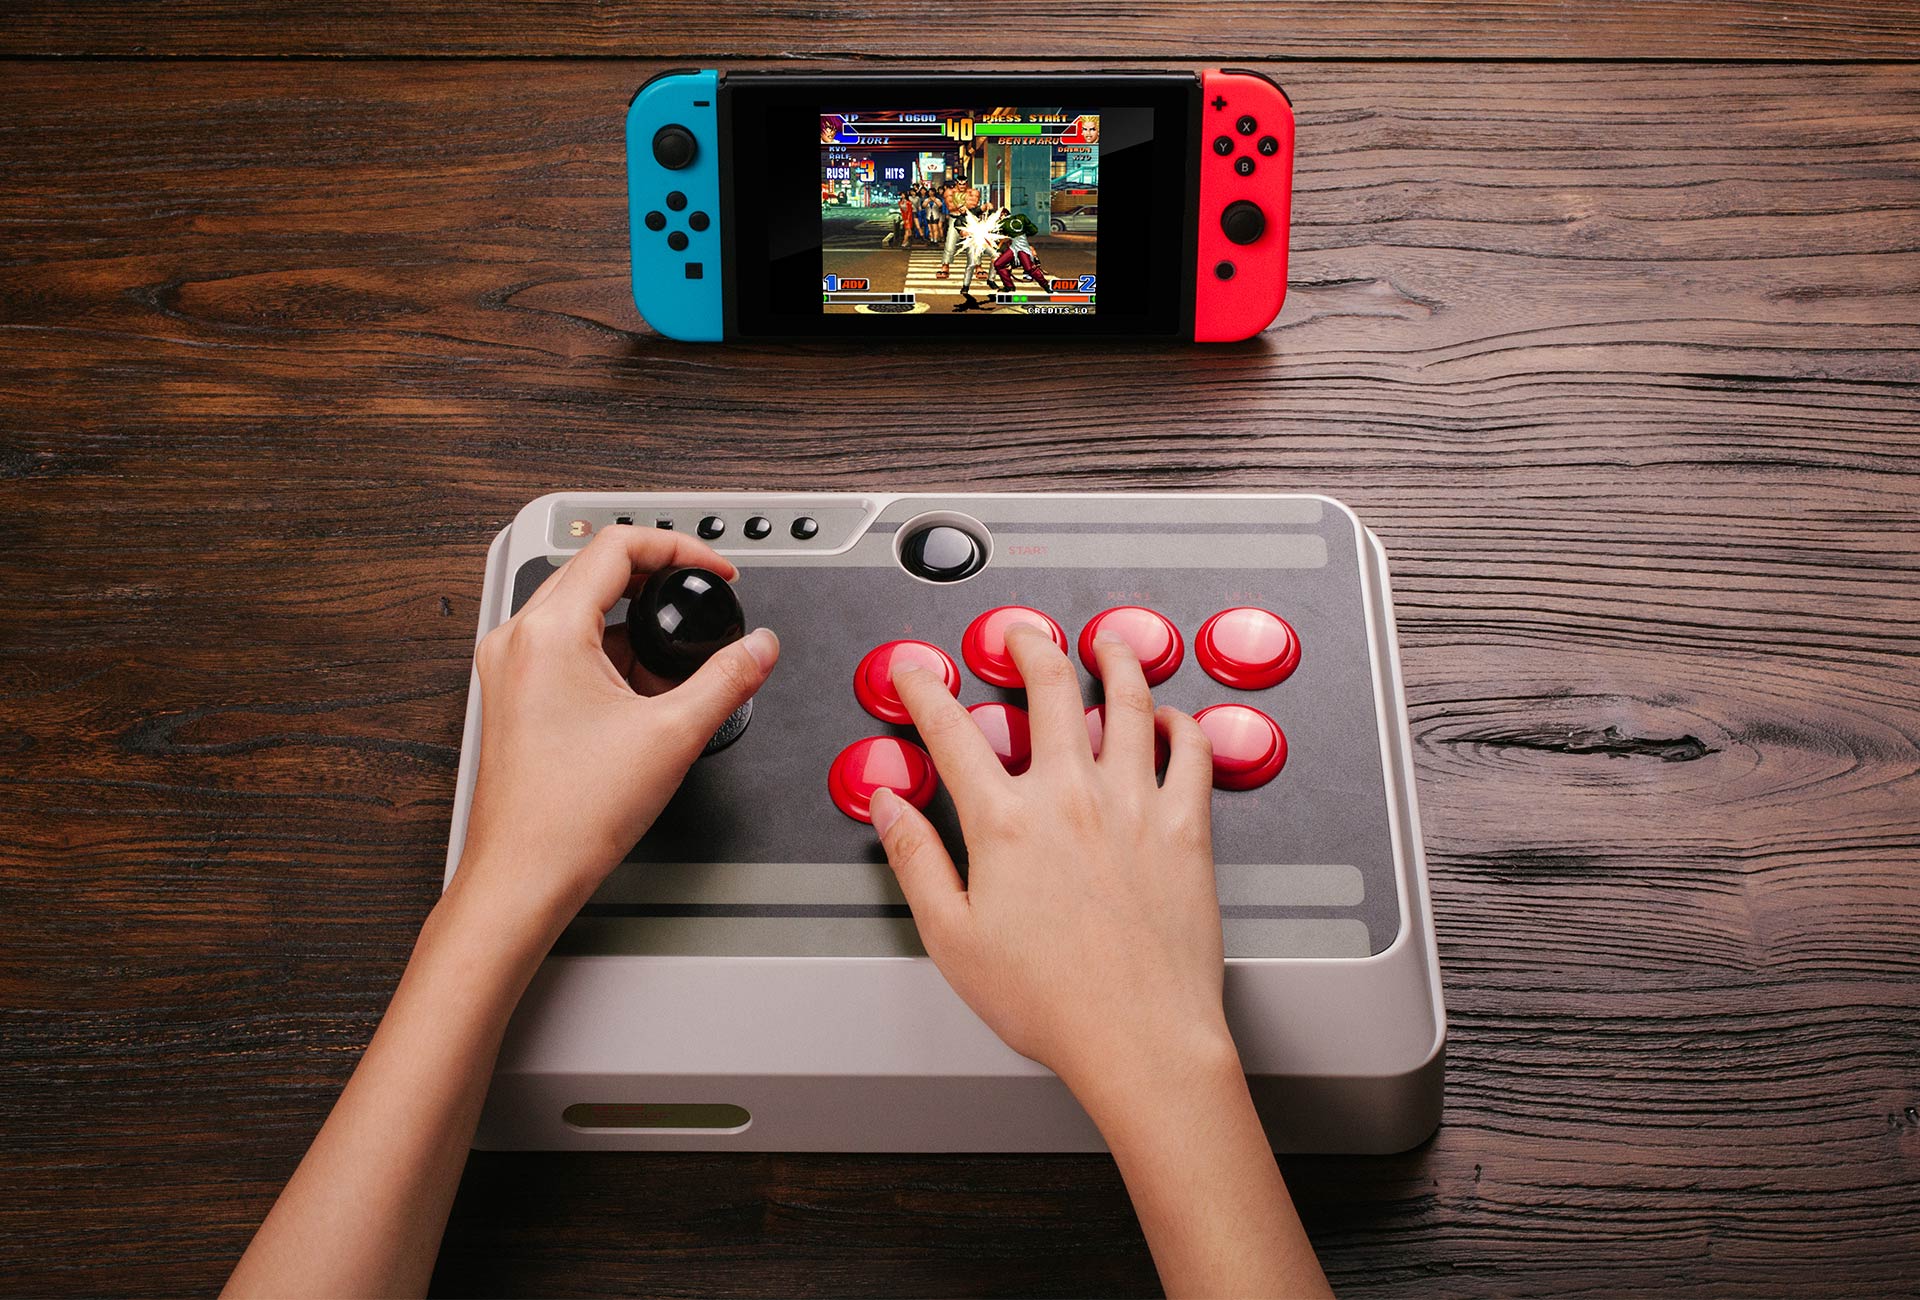 Main Nintendo Switch Lebih Menyenangkan dengan Aksesori Baru ini - 3